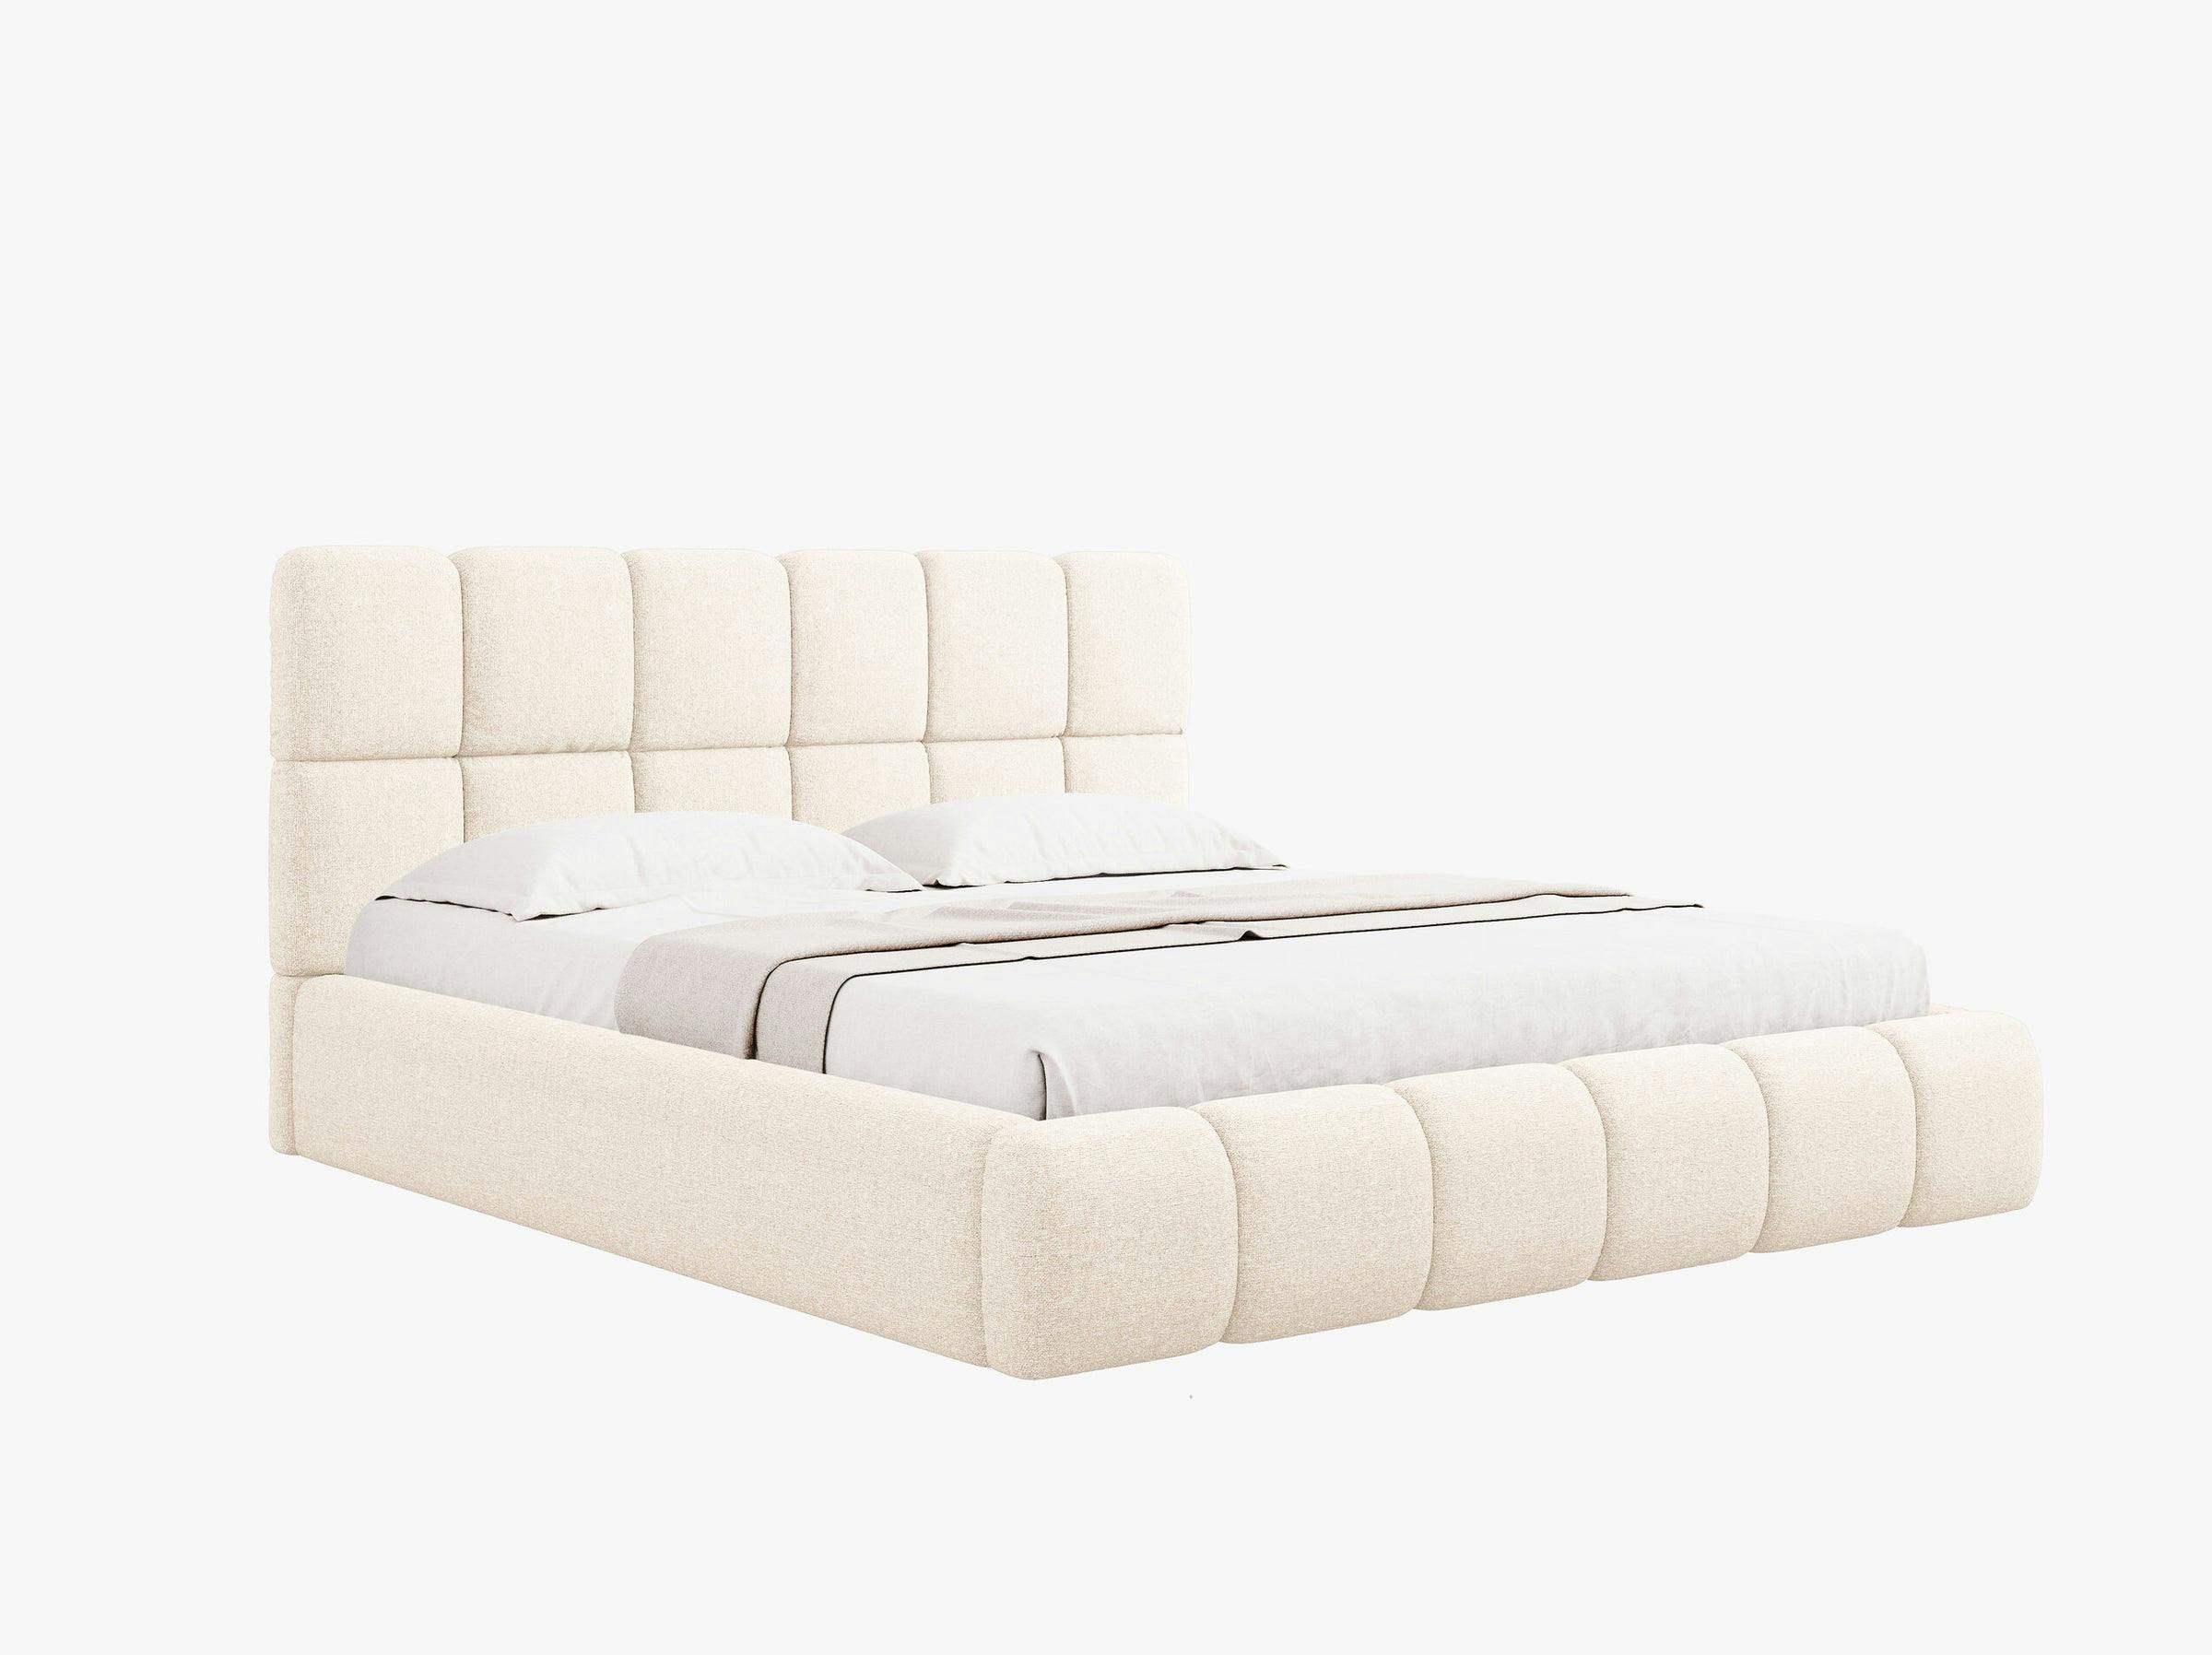 Bellis beds & mattresses chenille light beige